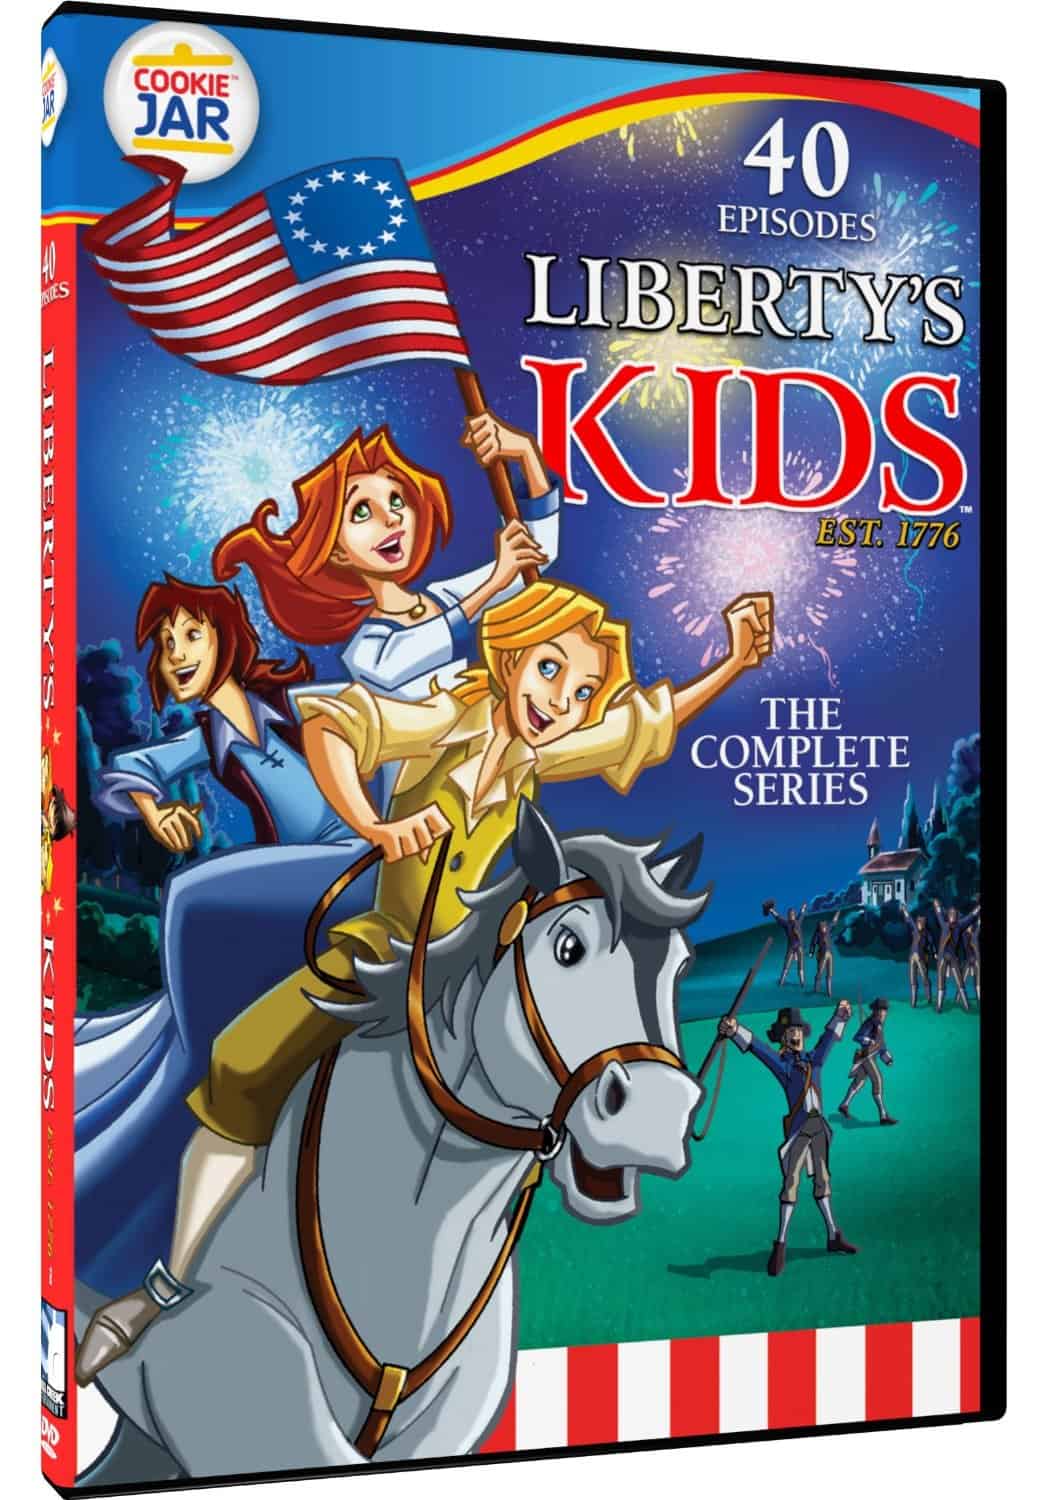 Liberty Kids